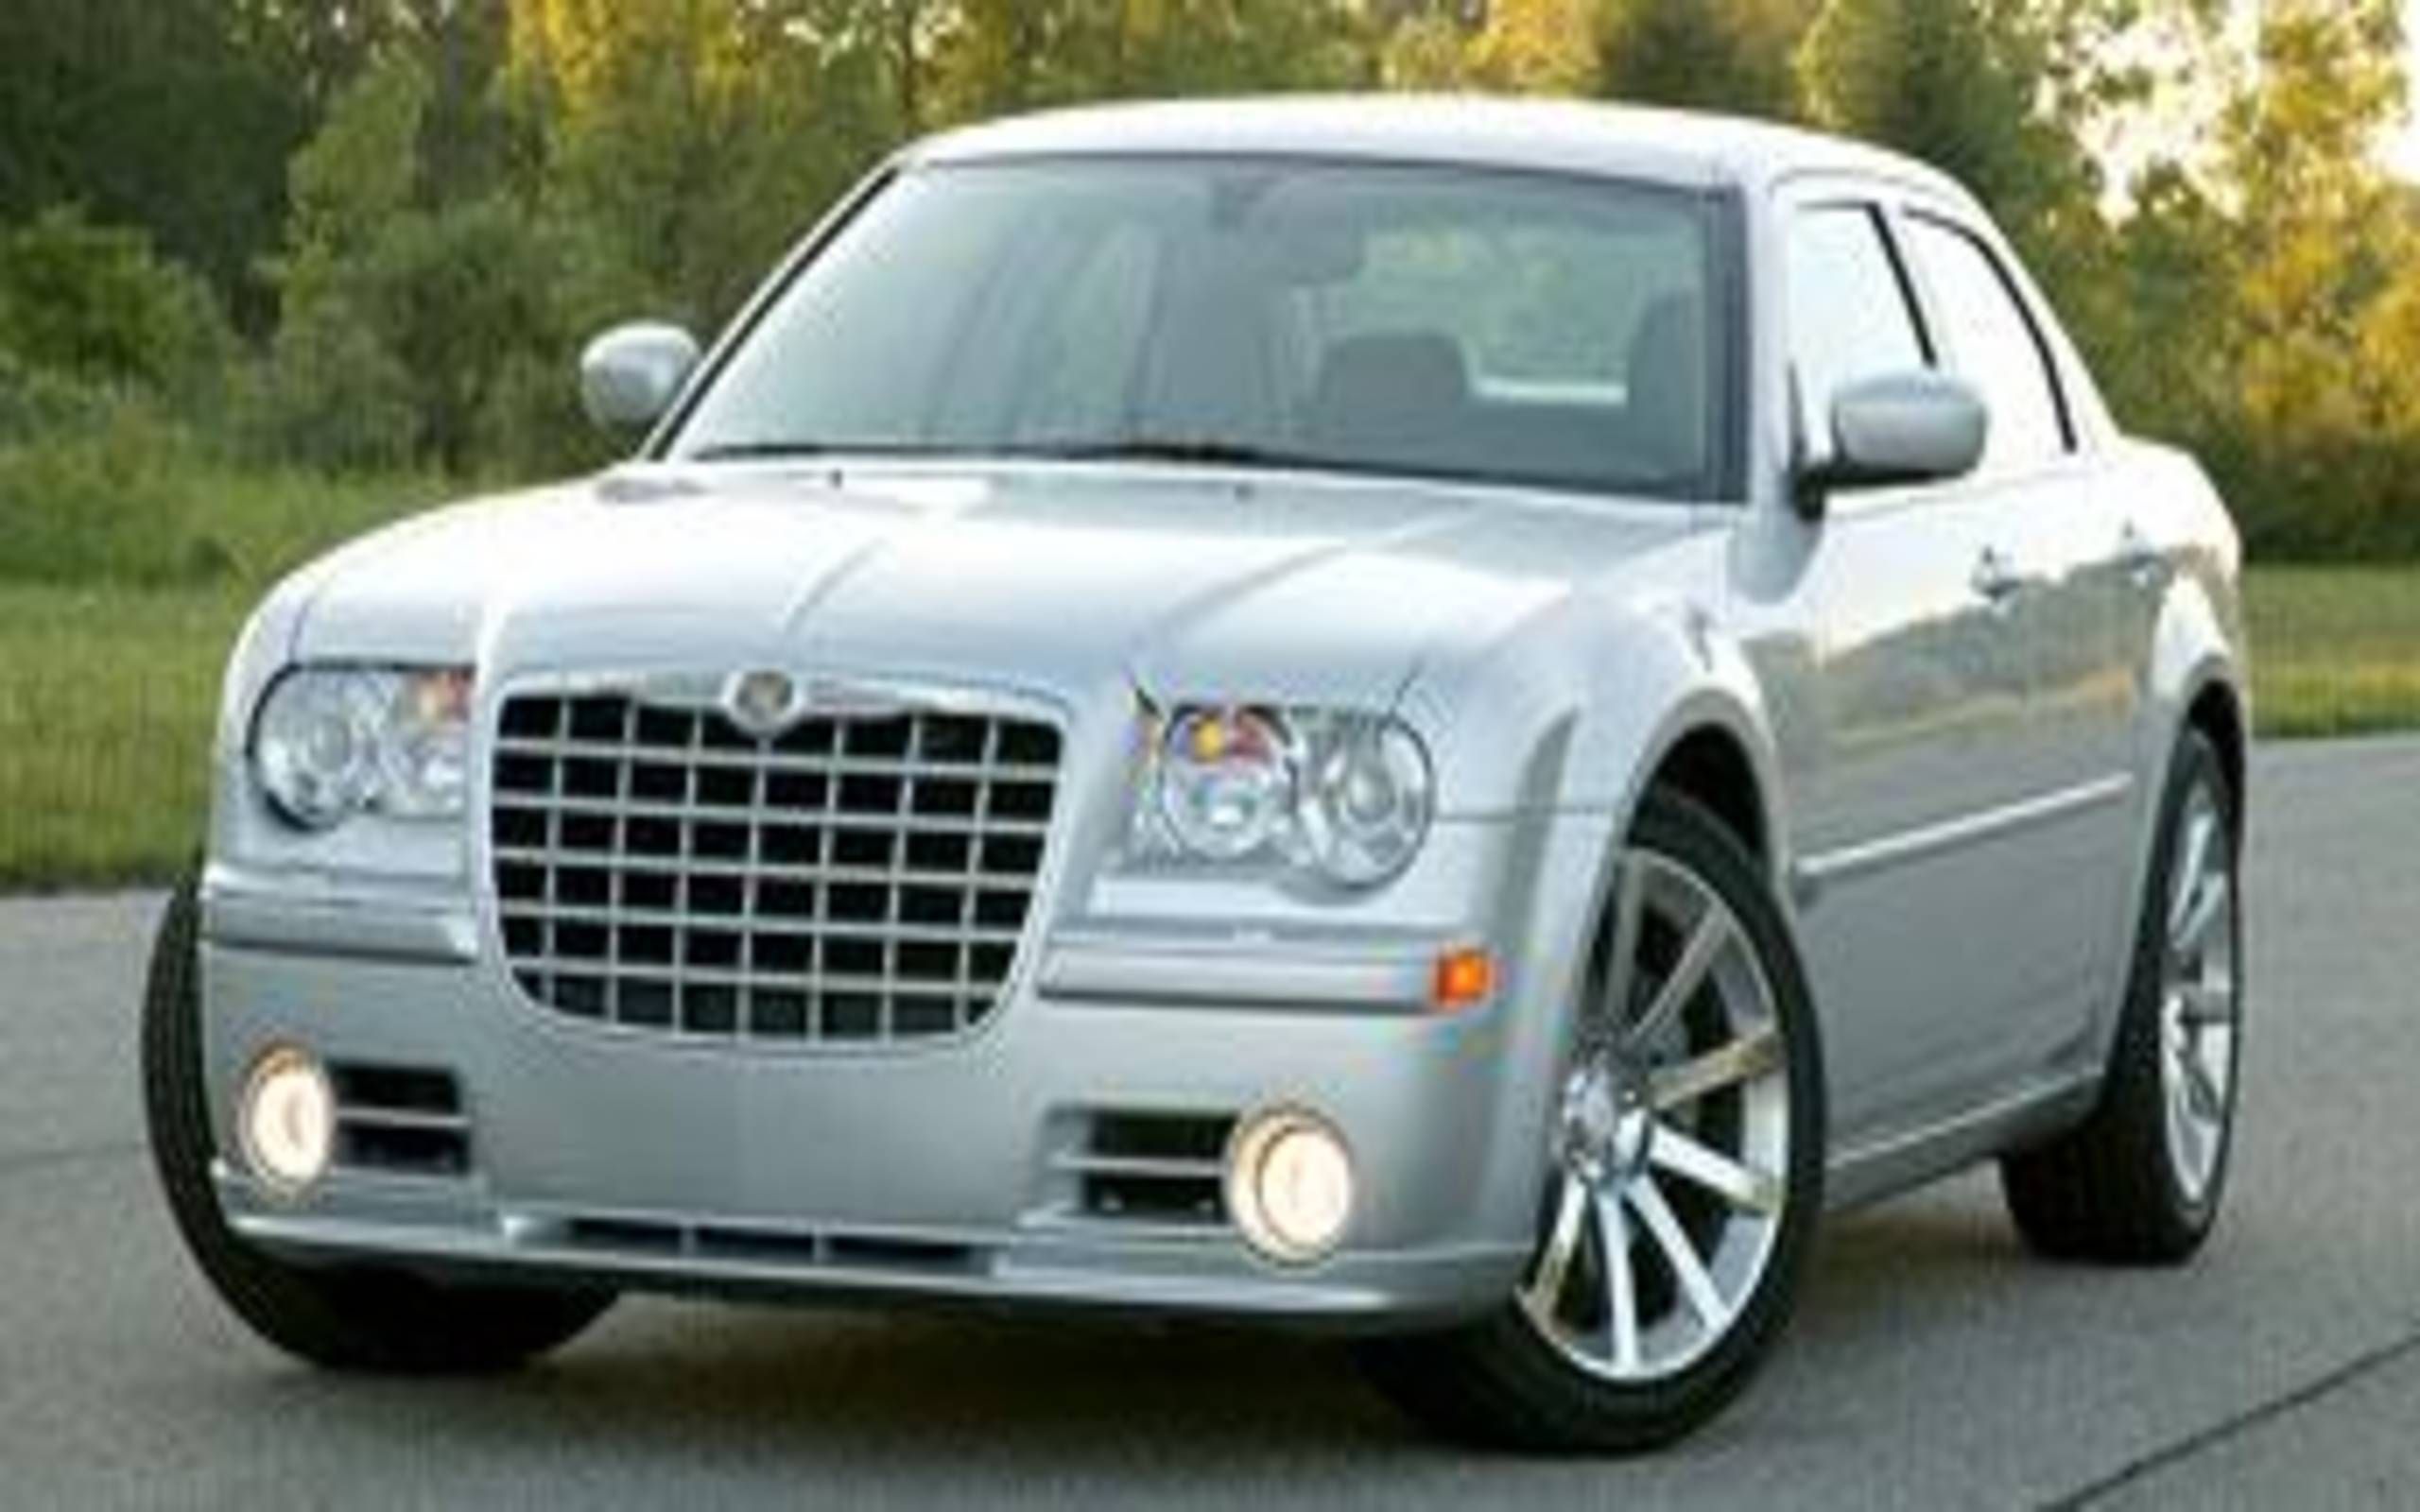 2005 Chrysler 300C SRT-8: Hotter Hardware Reprograms The Chrysler